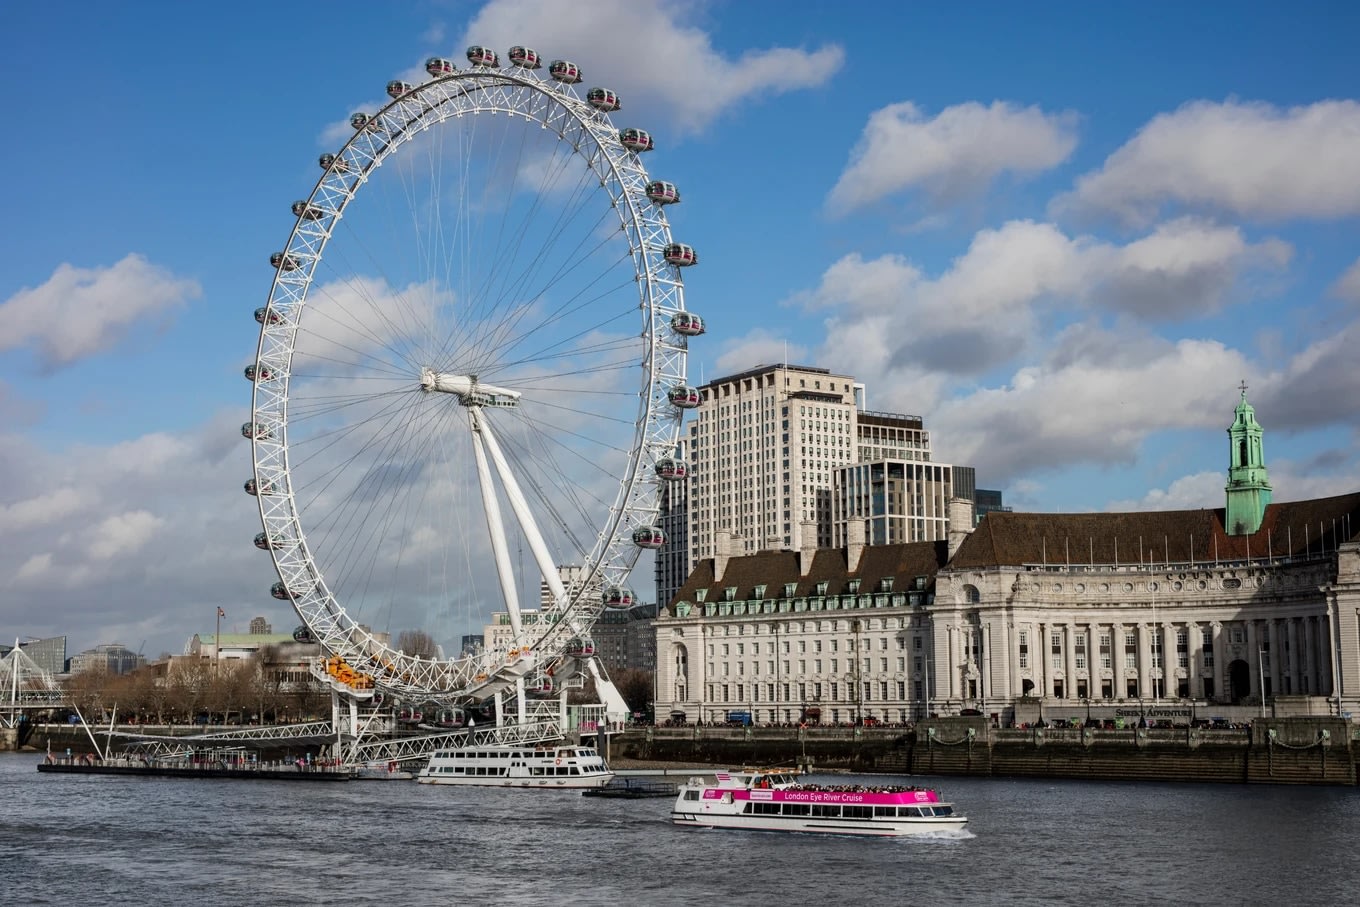 เพลิดเพลินไปกับทัศนียภาพและมุมมองใหม่ ๆ ของลอนดอนบน London Eye!